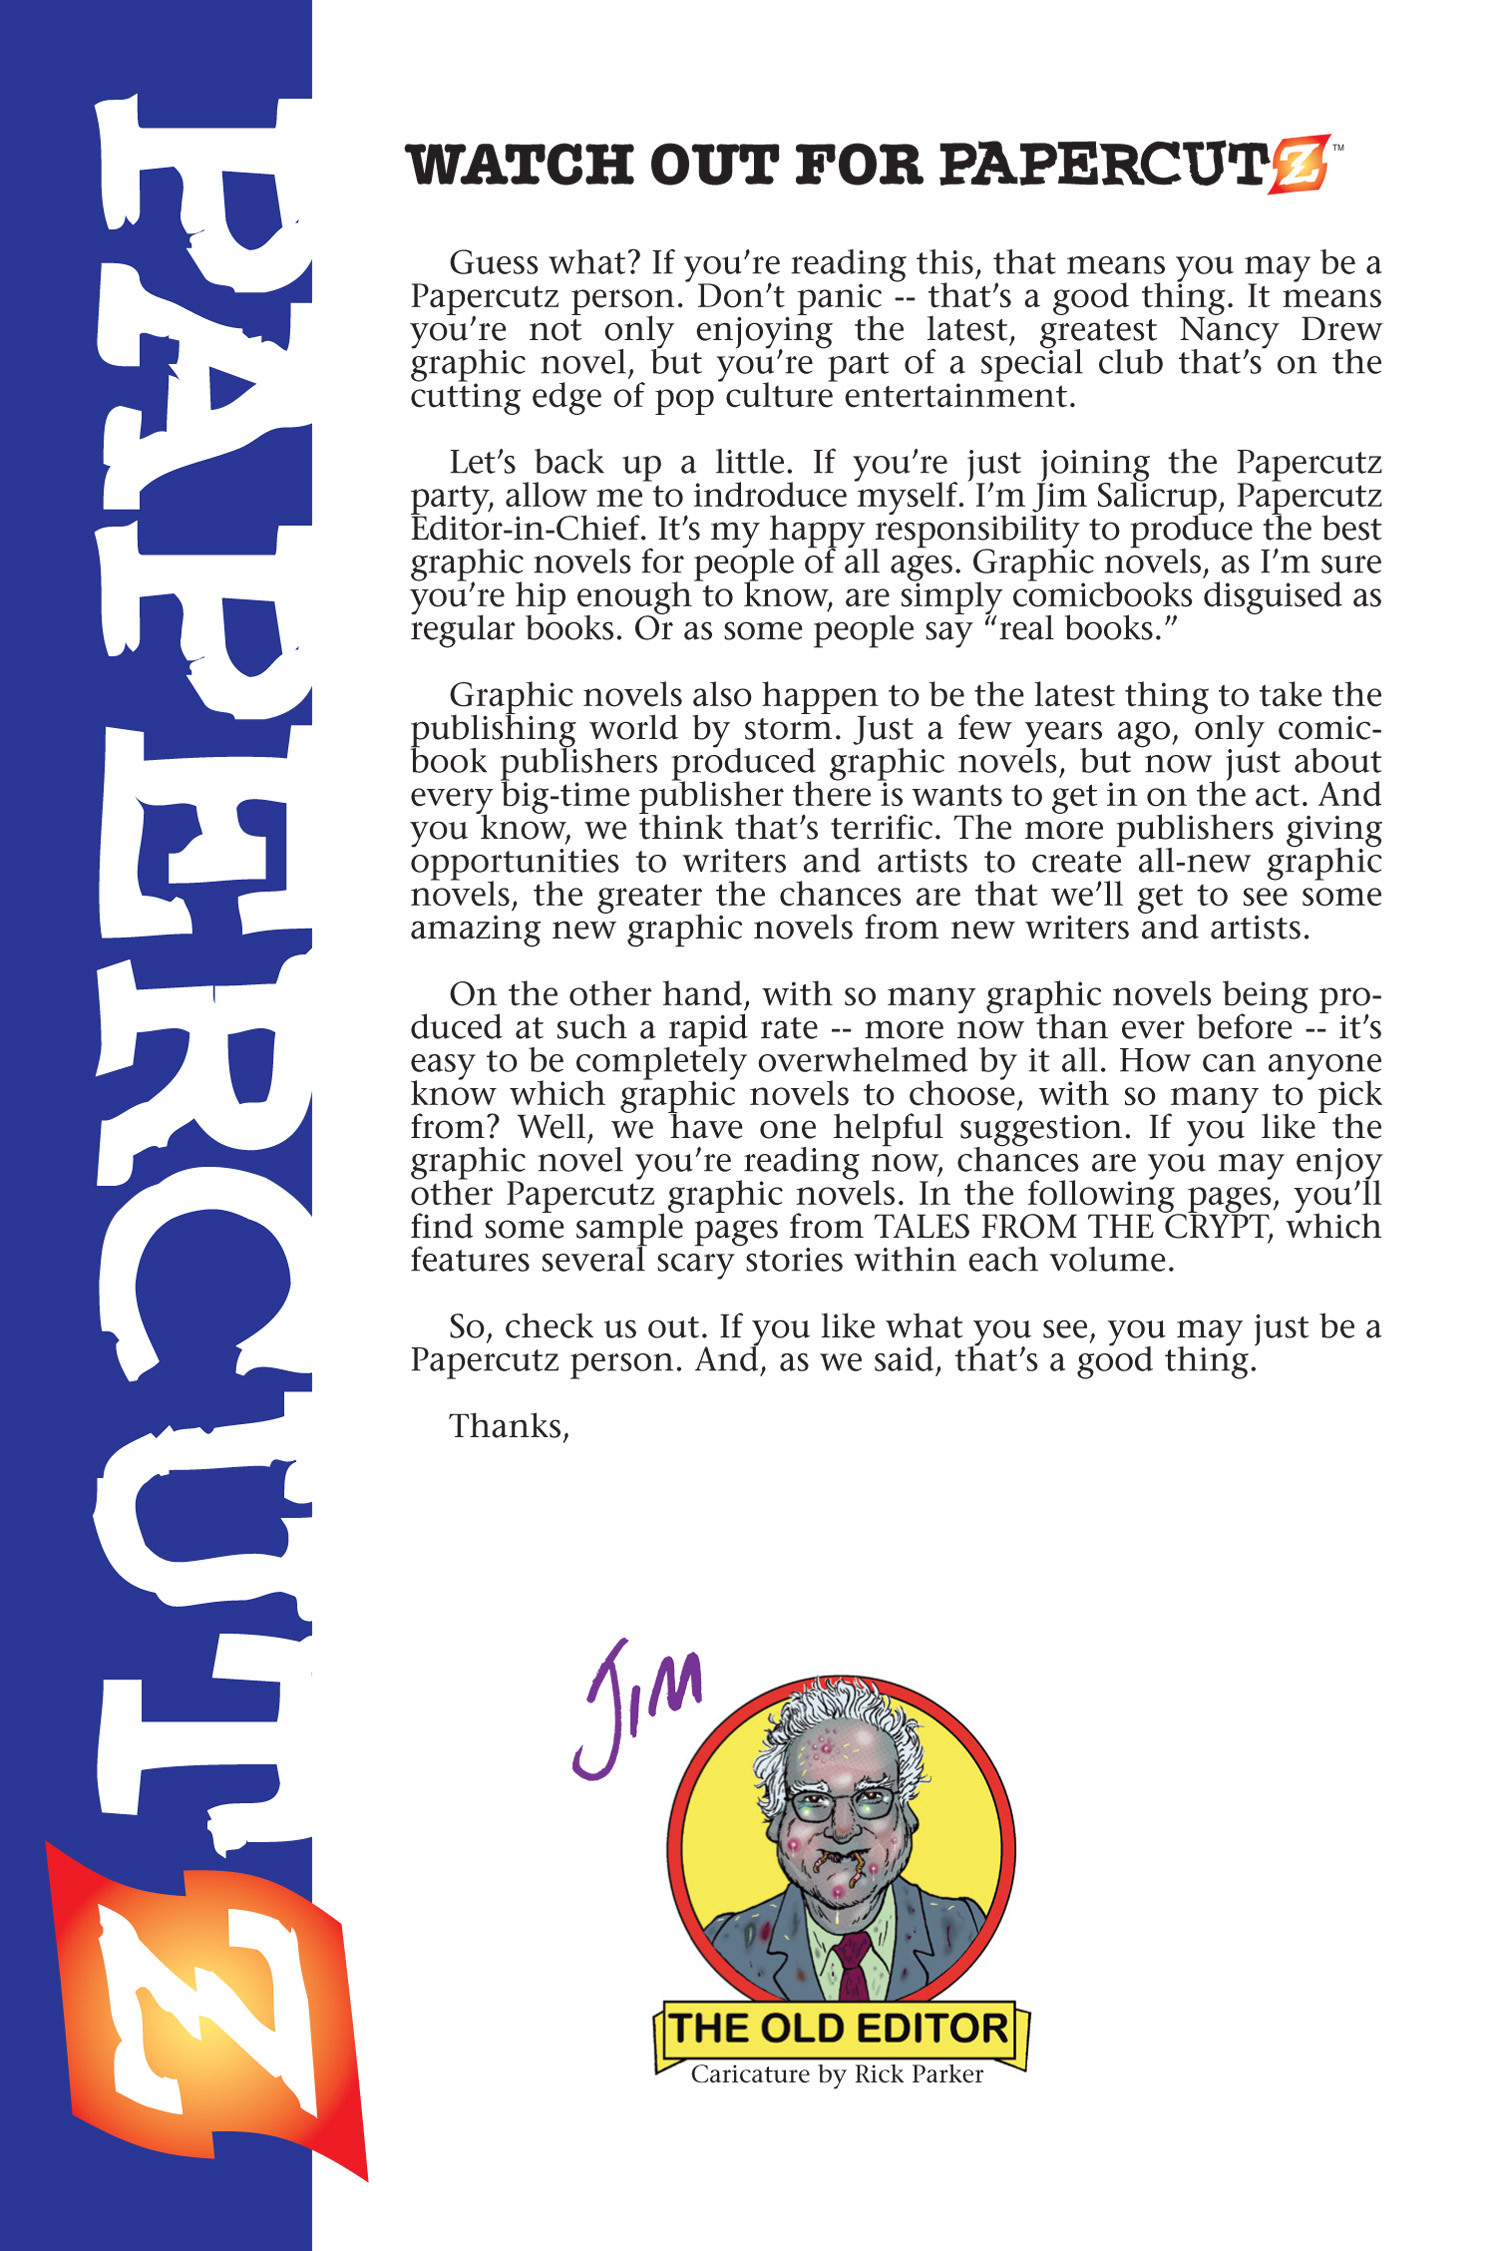 Read online Nancy Drew comic -  Issue #15 - 90